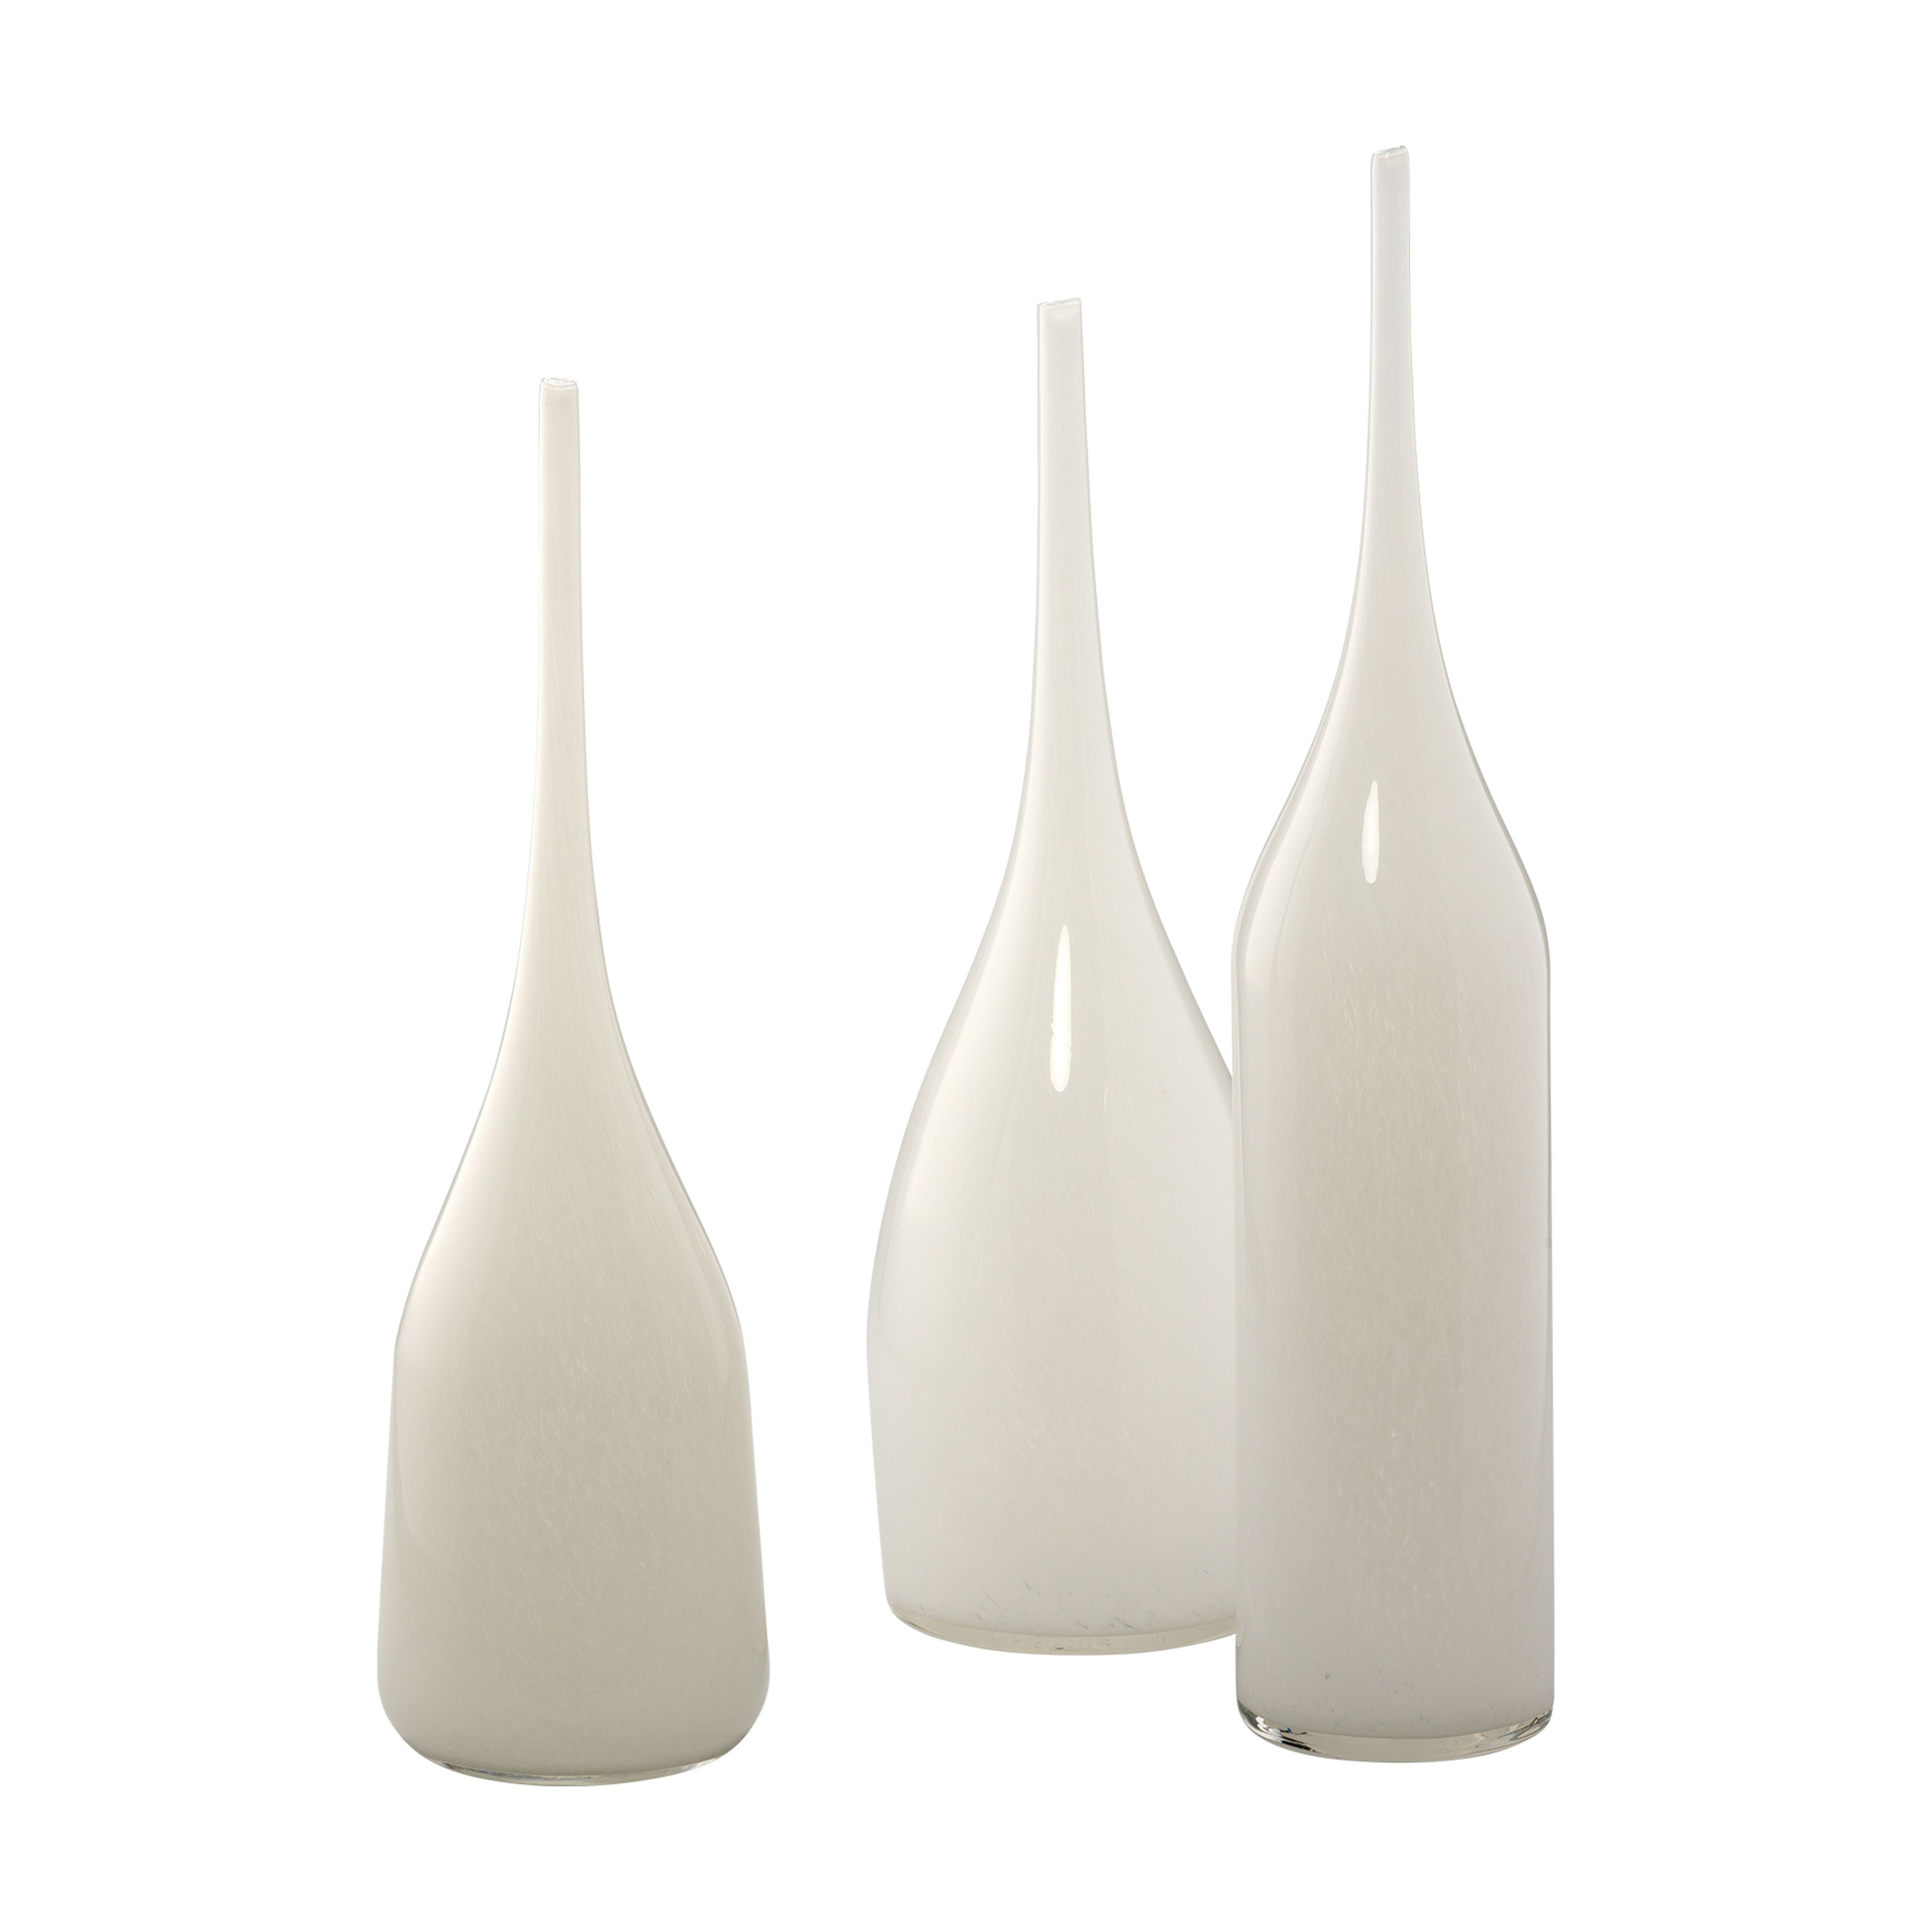 Jamie Young Company - 7PIXI-VAWH - Pixie Decorative Vases (set of 3) - Pixie - White